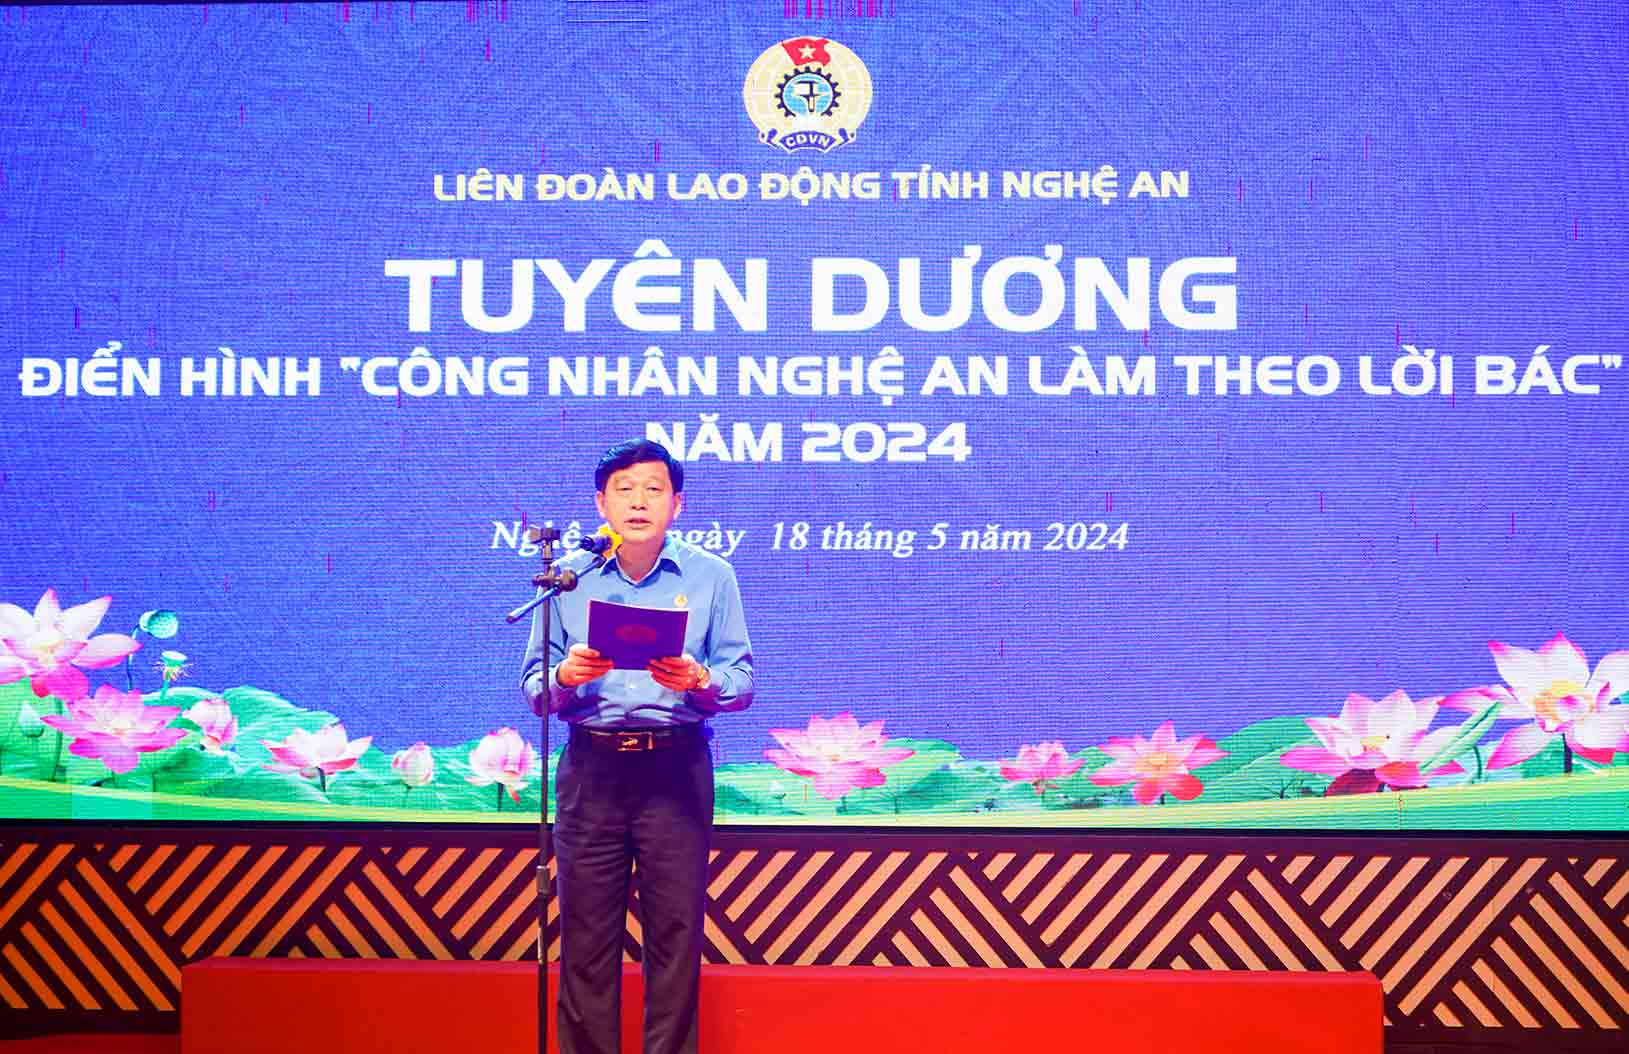 Ông Kha Văn Tám - Chủ tịch Liên đoàn Lao động tỉnh Nghệ An phát biểu tại hội nghị. Ảnh: Duy Chương.